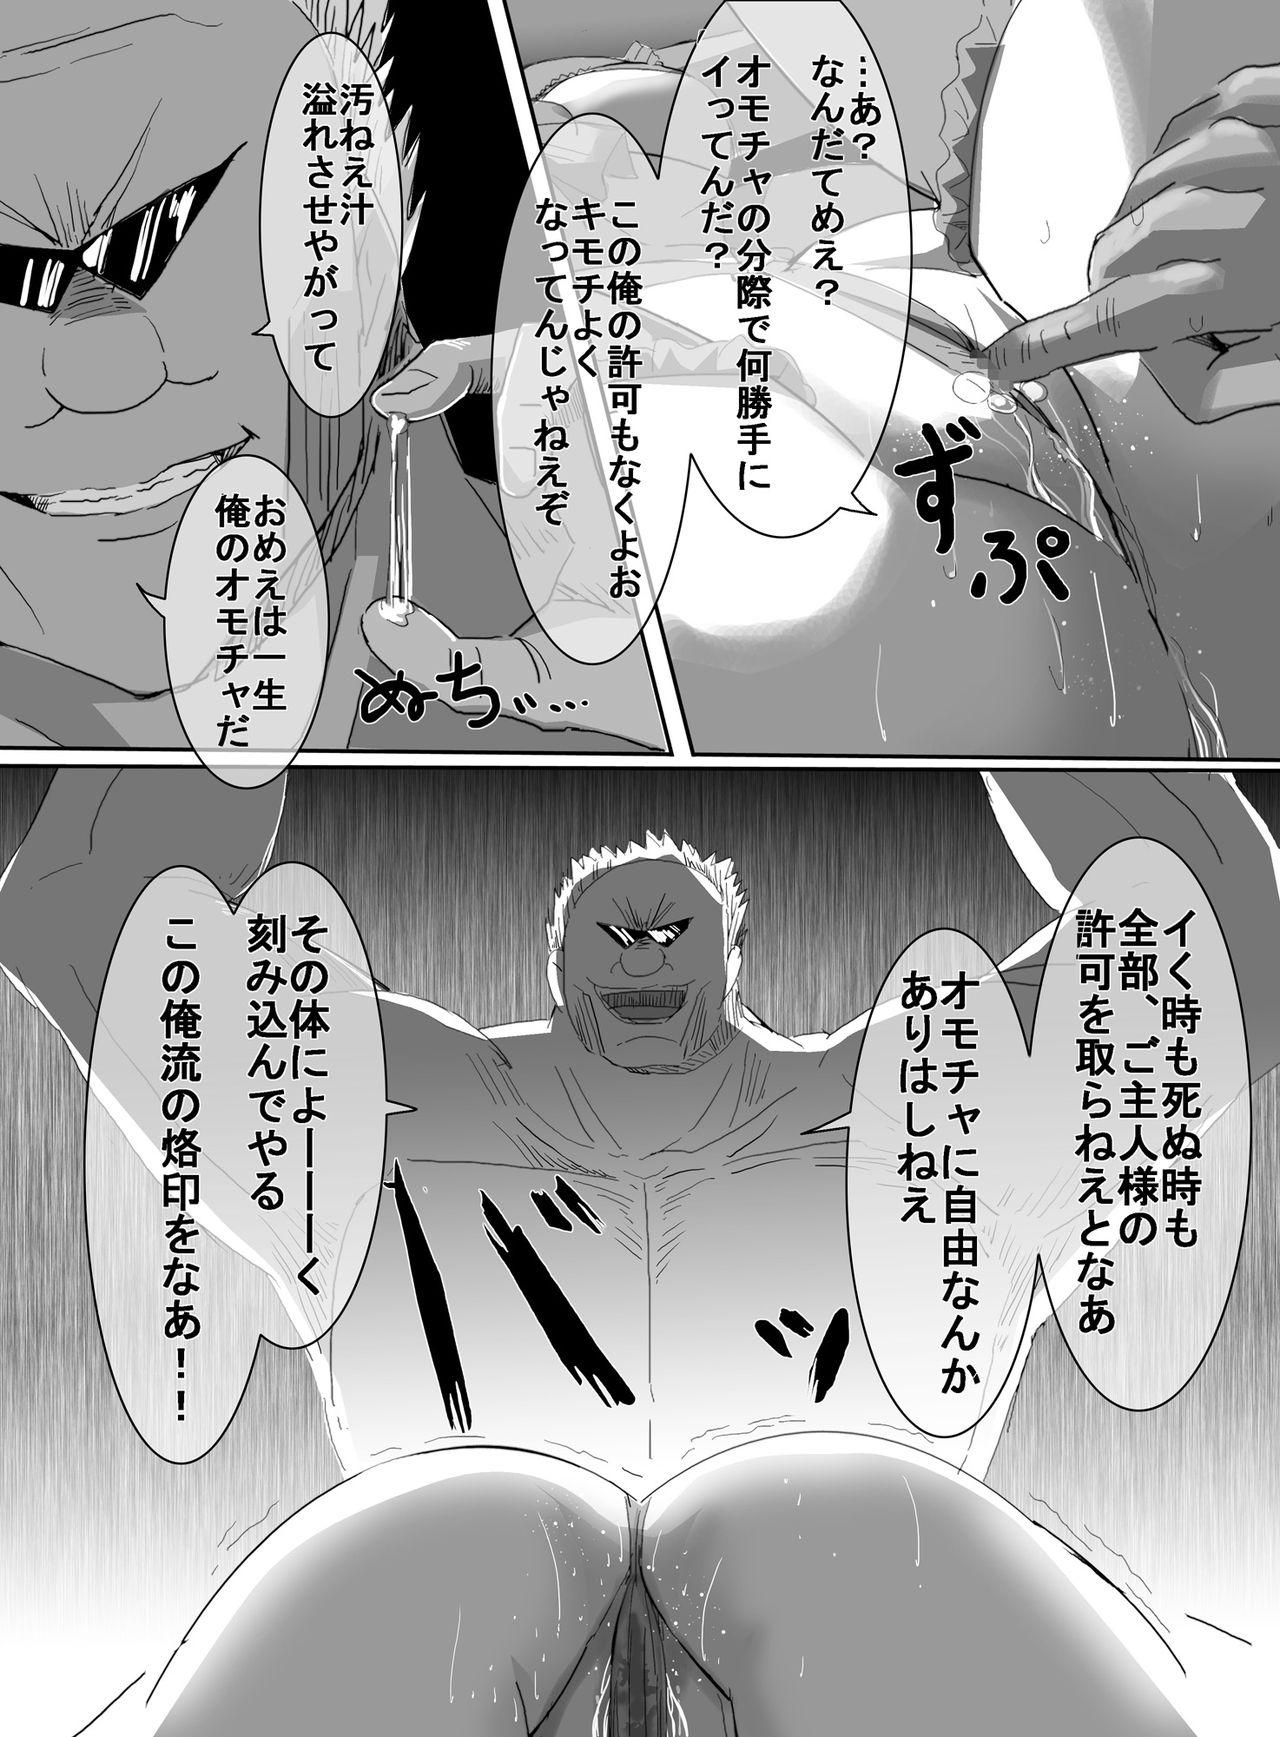 Mahou Shoujo vs Ryona Senpai 56